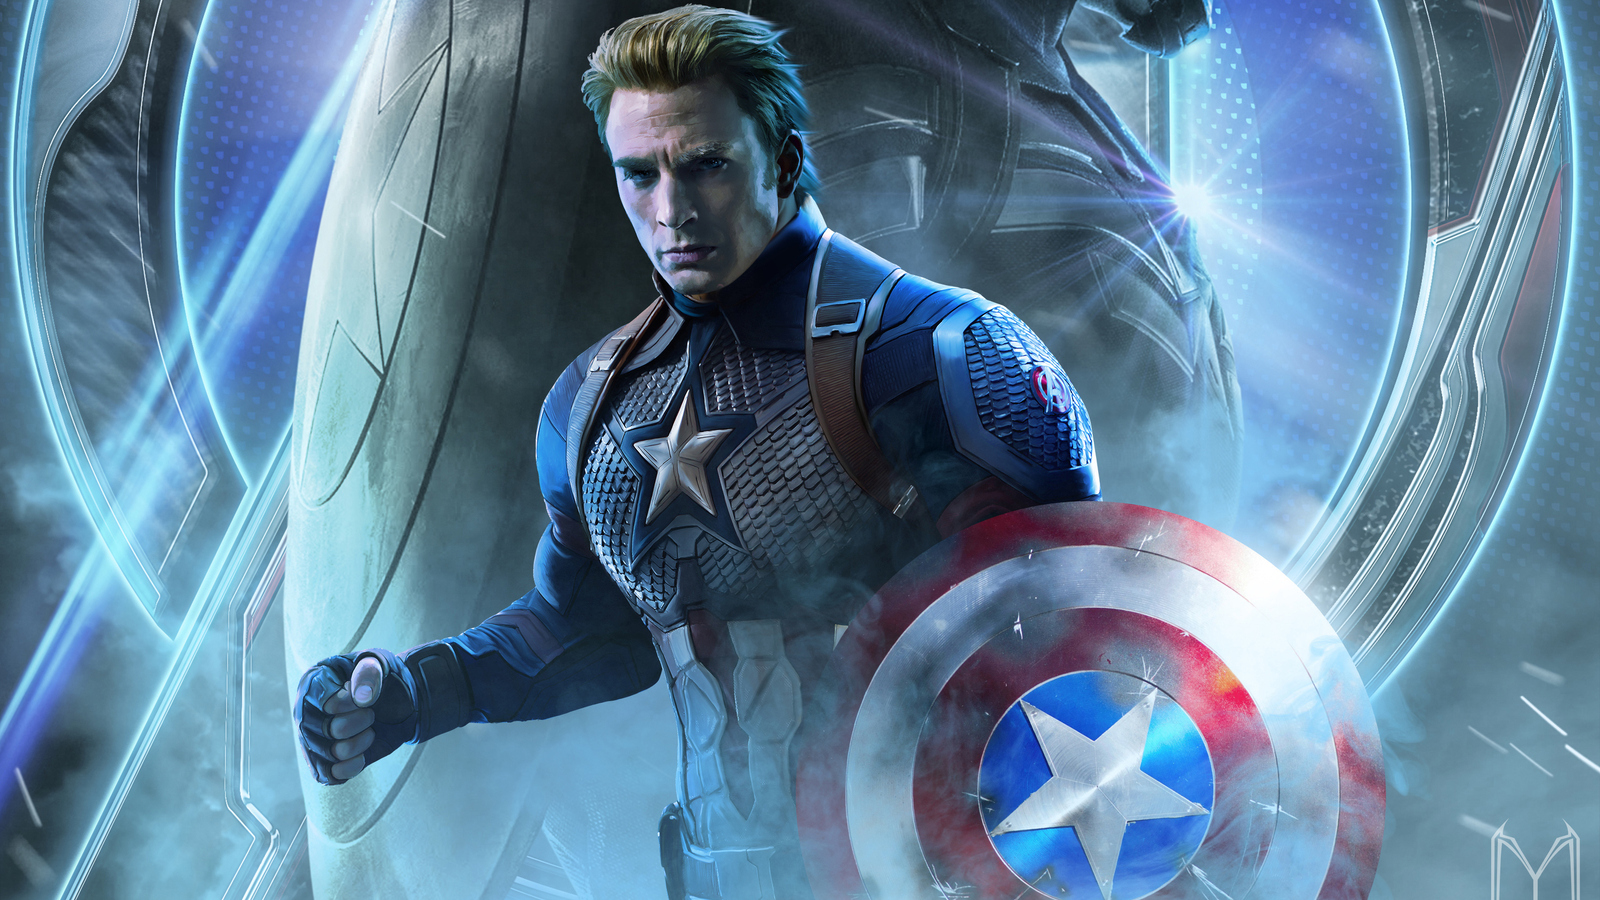 Download captain america in avengers endgame captain america avengers end game wallpaper in x resolution